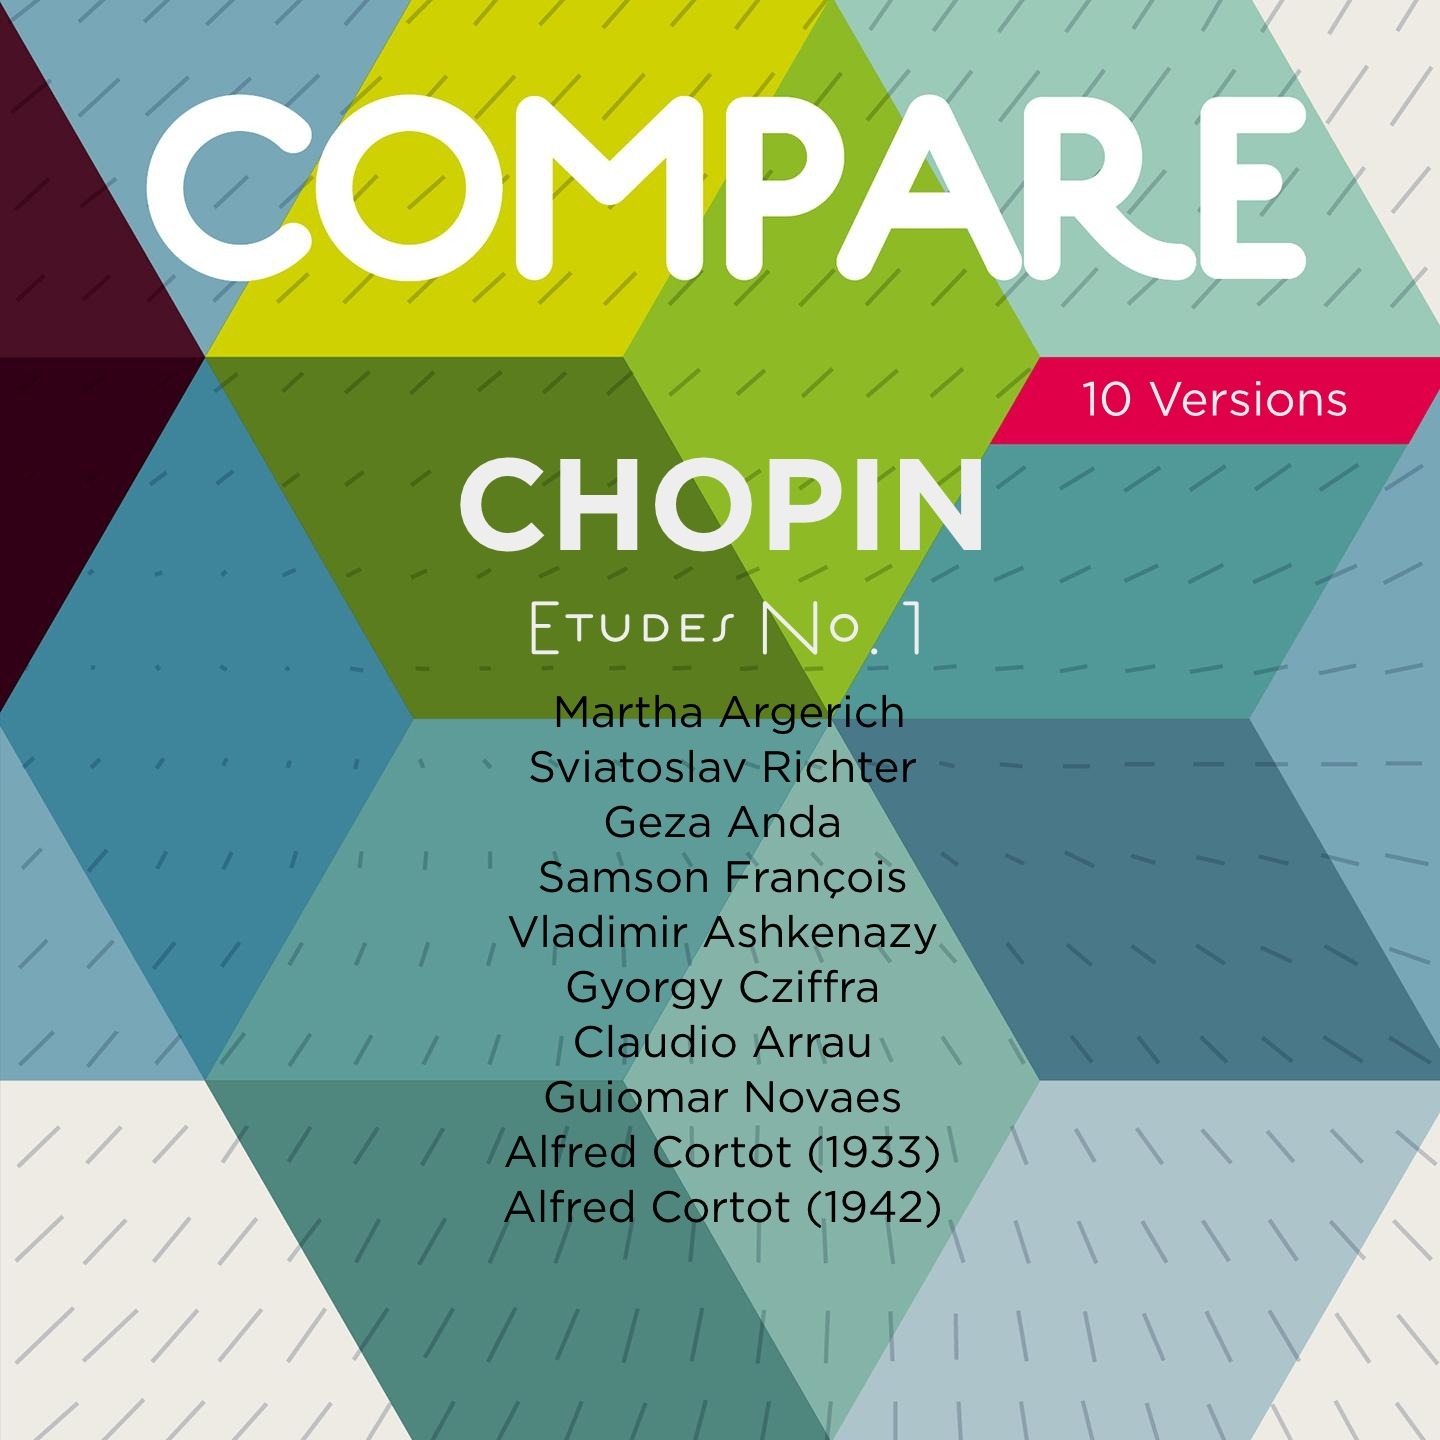 Chopin: Etudes, Op. 10 No. 1, Argerich vs. Richter vs. Anda vs. Fran ois vs. Ashkenazy vs. Cziffra vs. Arrau vs. Novaes vs. Cortot